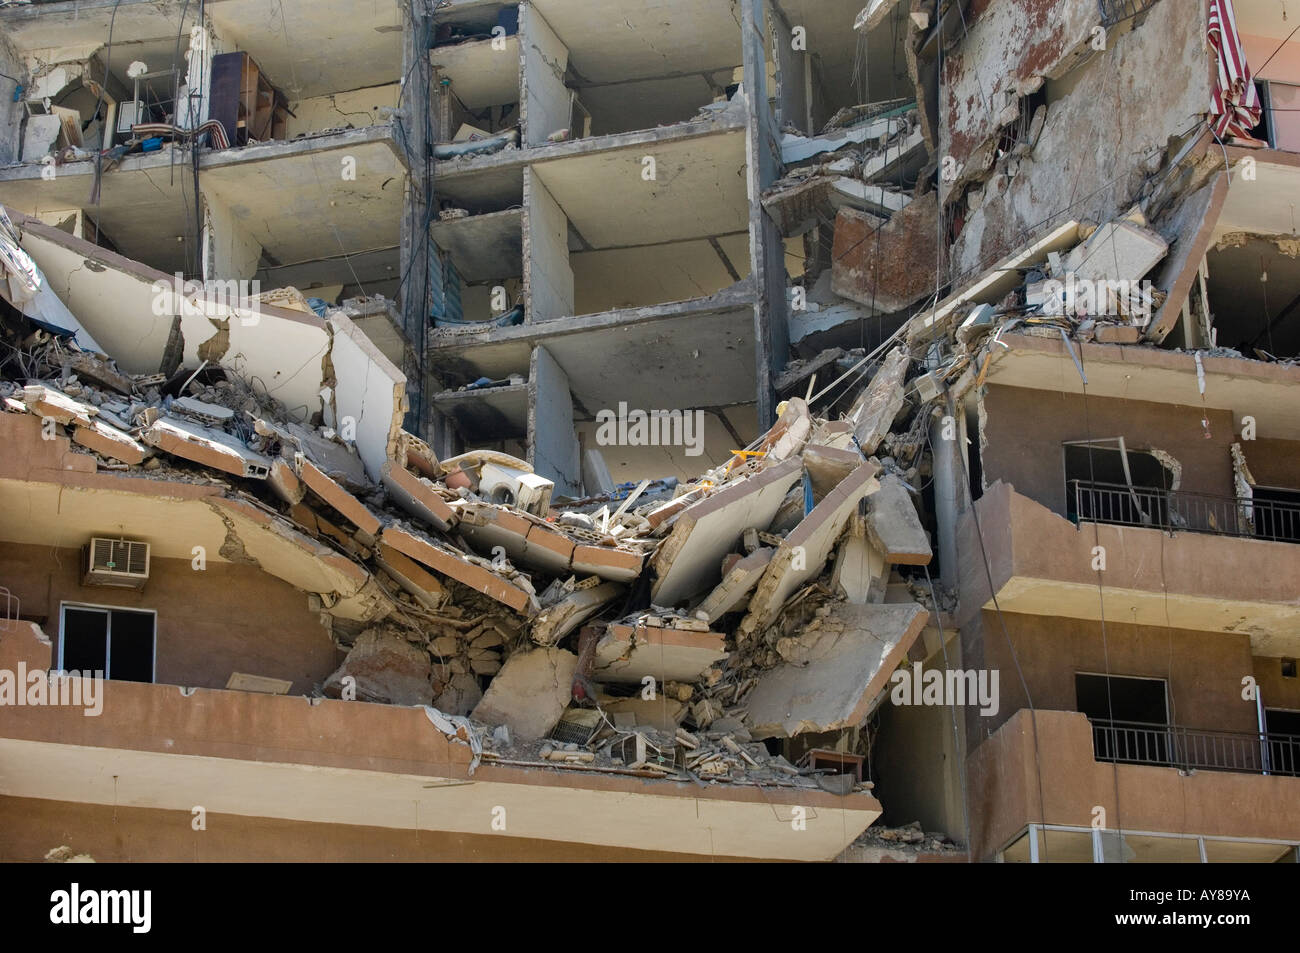 Dans le domaine de la destruction du Hezbollah à Beyrouth Liban Banque D'Images